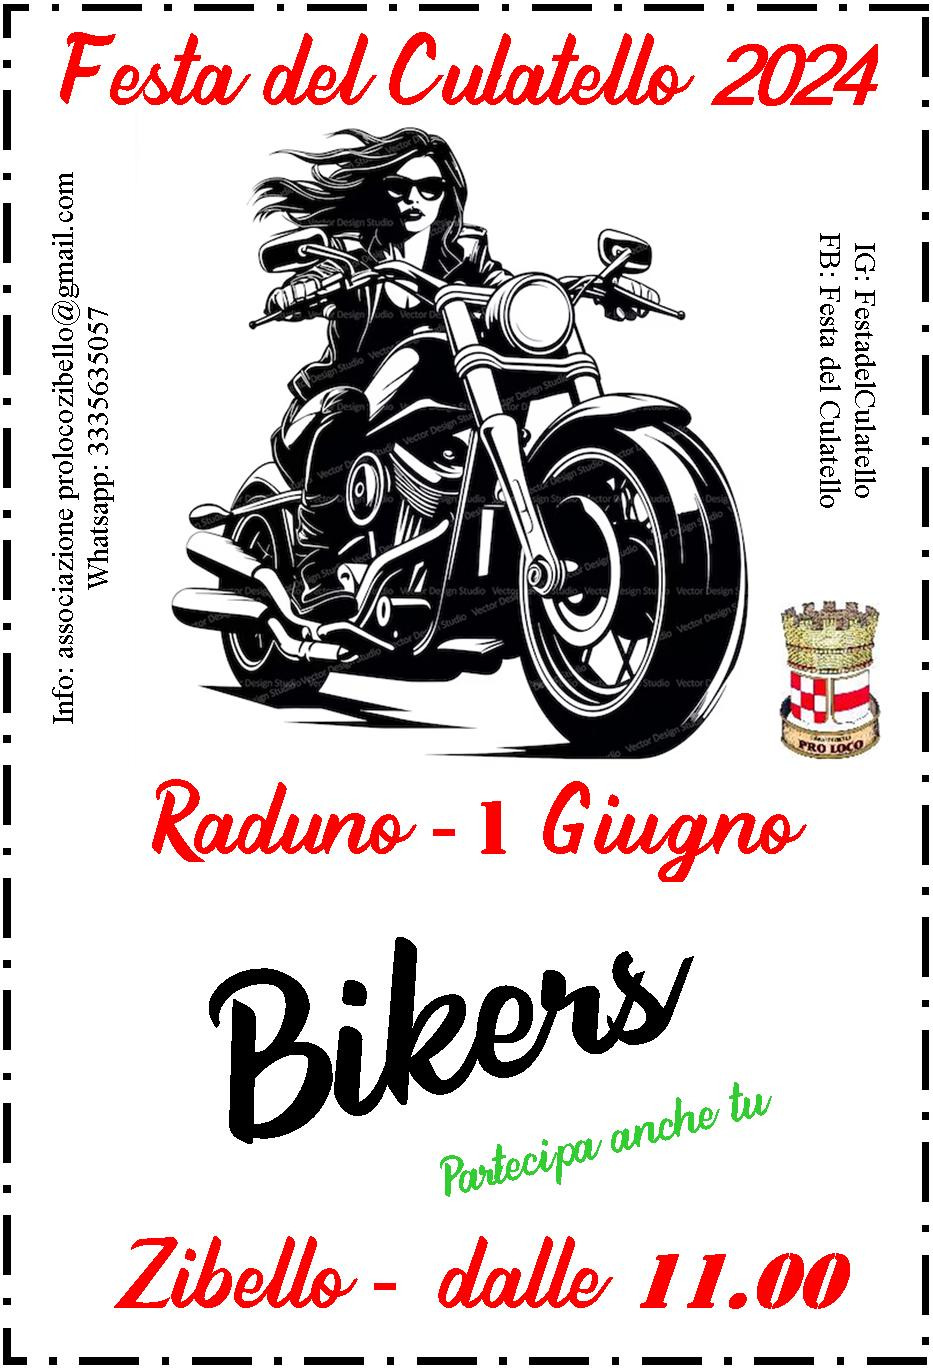 Alla festa del culatello 2024 "Raduno Bikers"